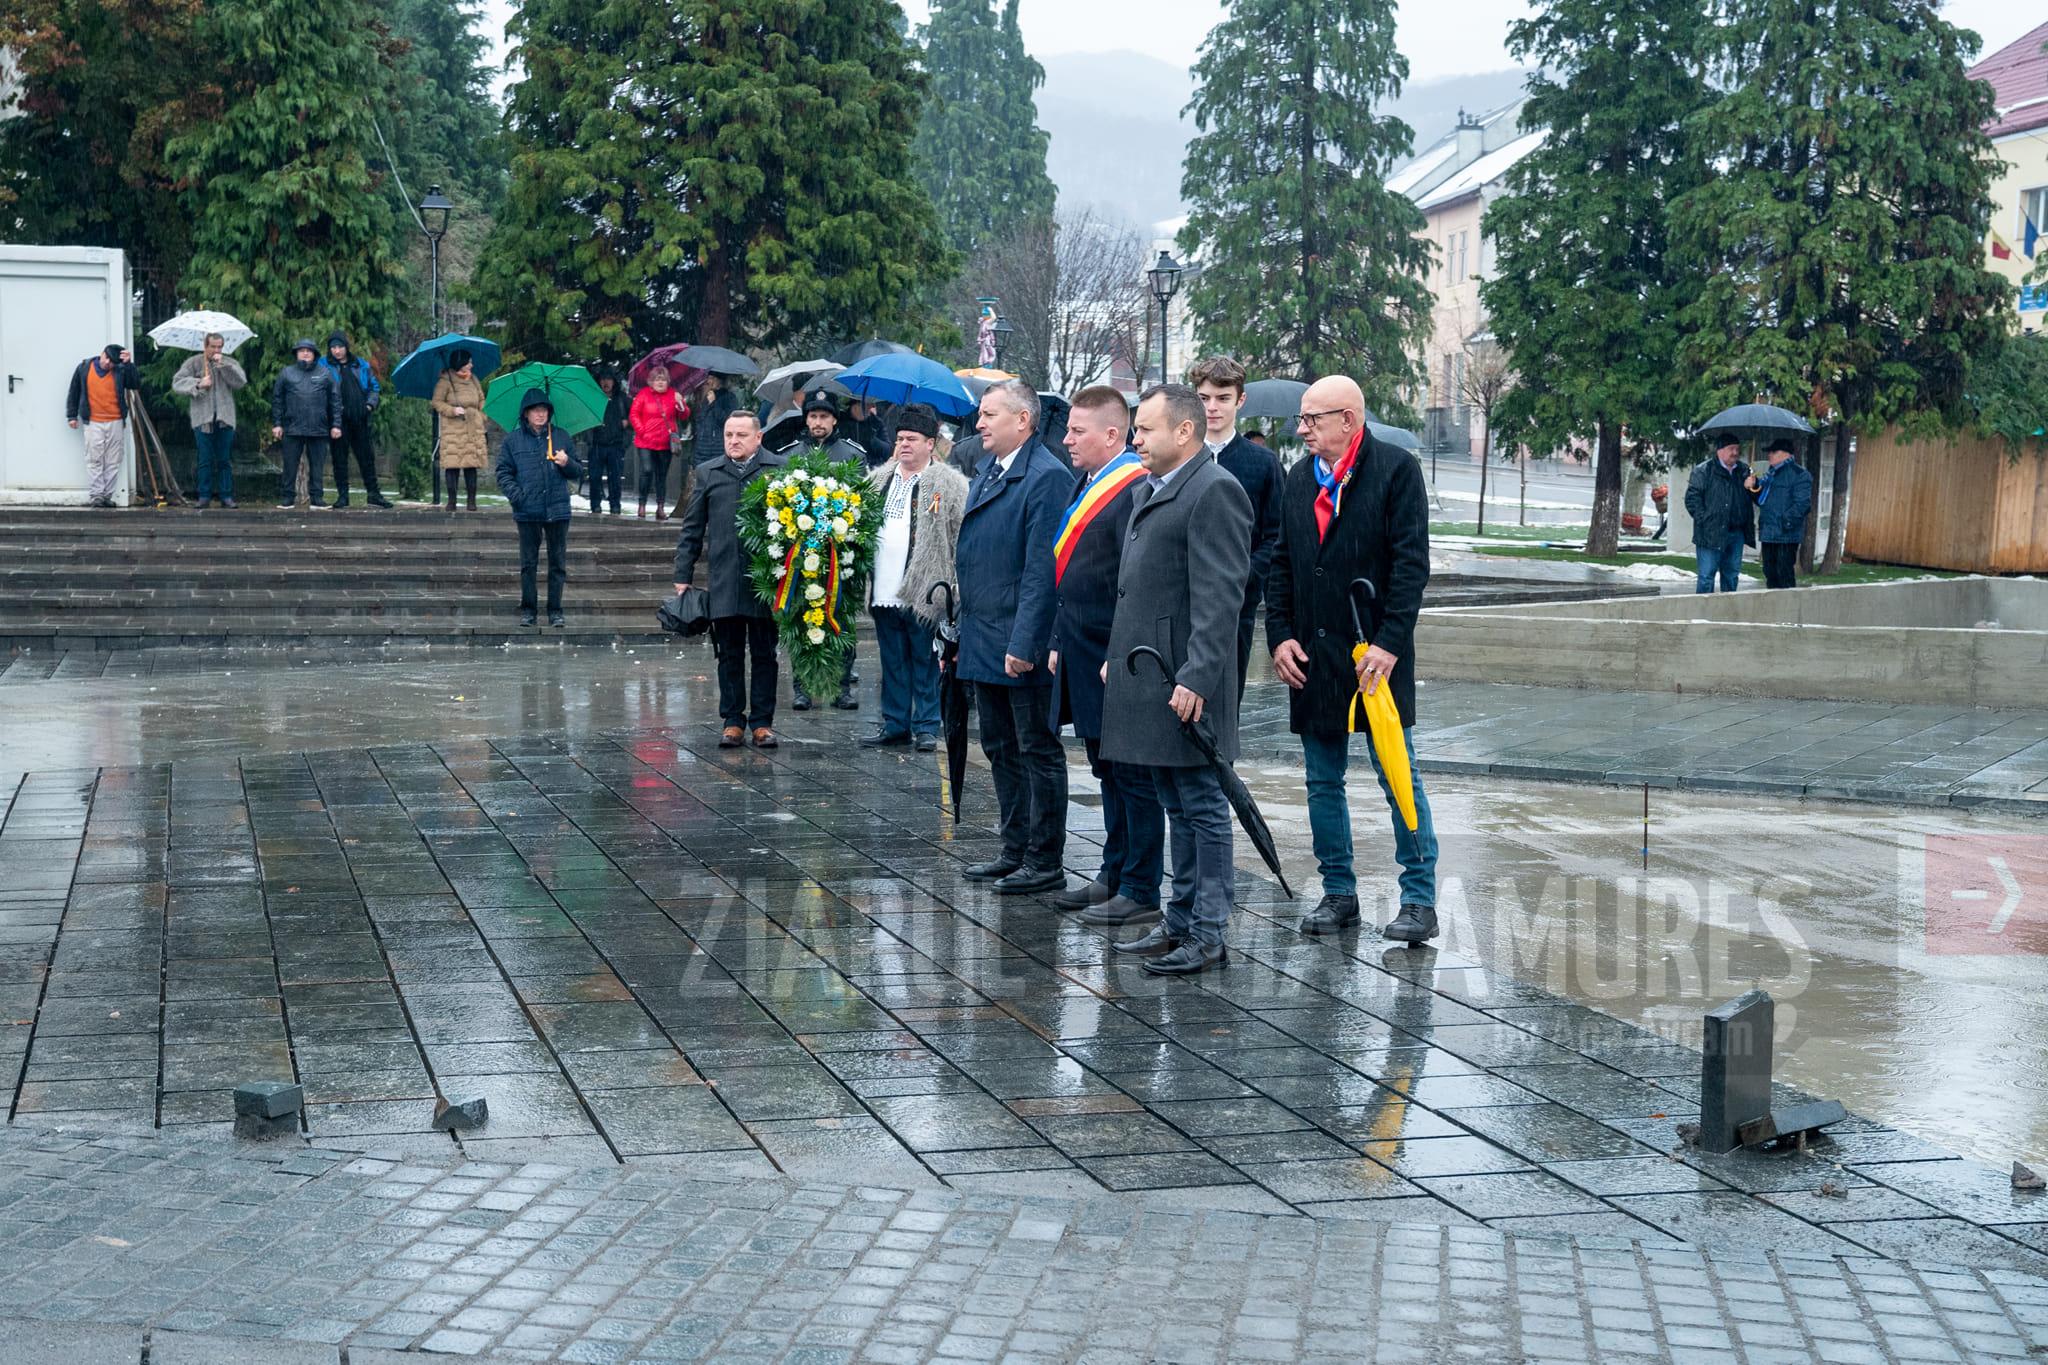 Ziua Națională a României a fost marcată printr-un Te Deum în orașul Baia Sprie. Depunerea de coroane s-a făcut la Monumentul Eroilor